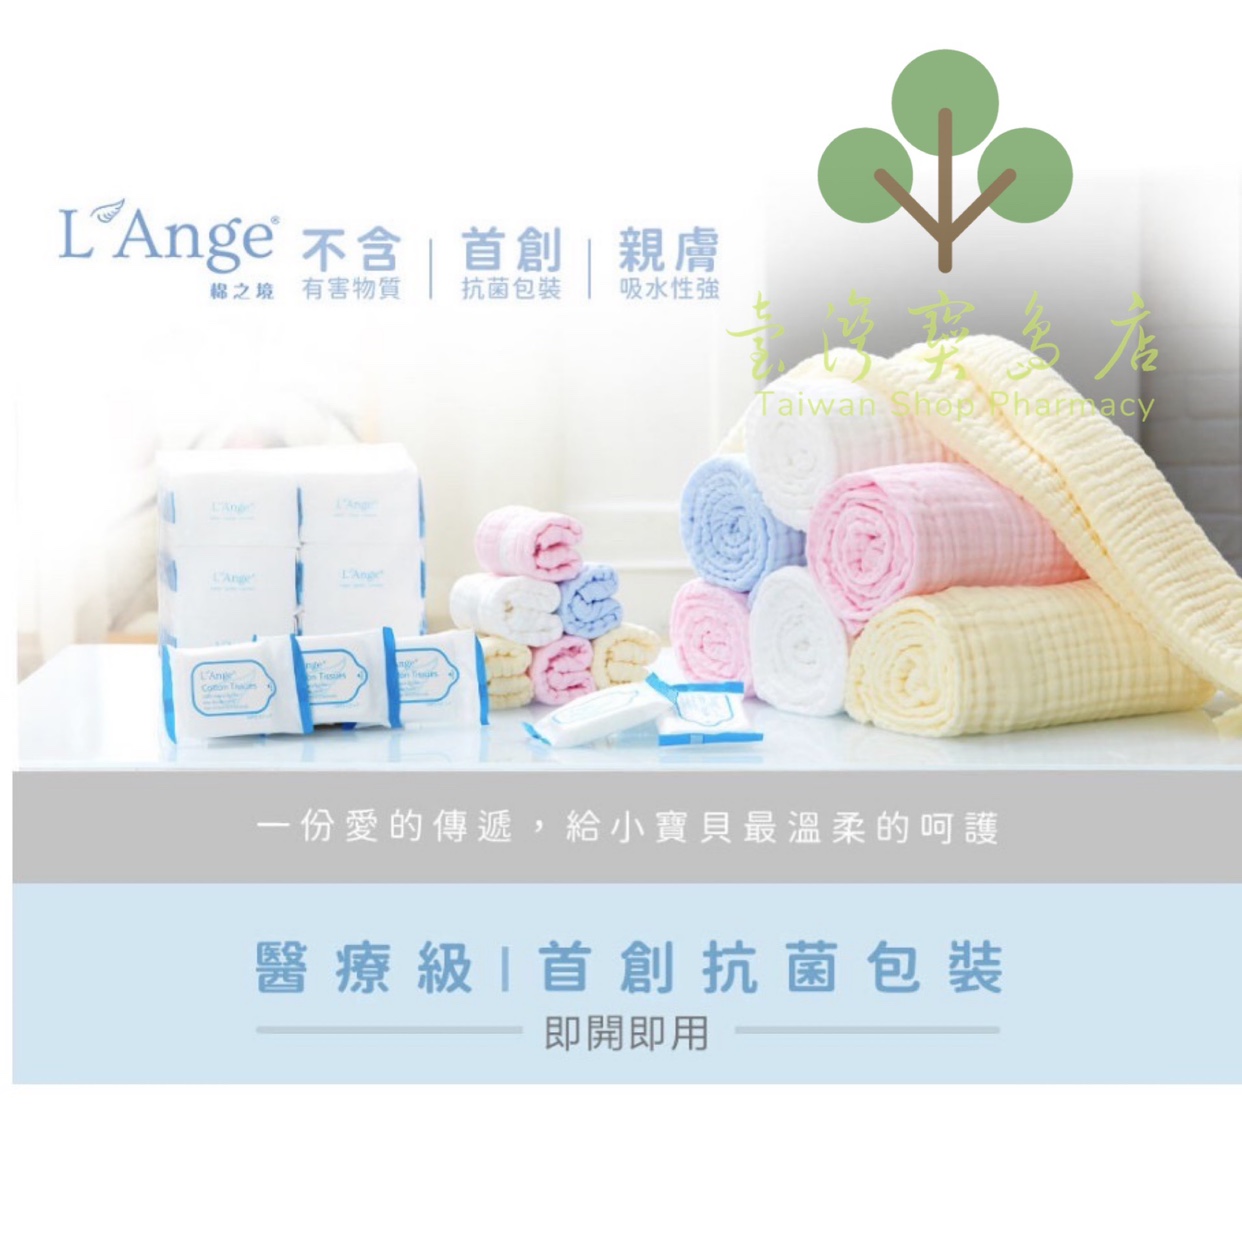 台湾正品直邮 婴儿幼童  L'Ange棉之境纯棉纱布浴巾盖毯